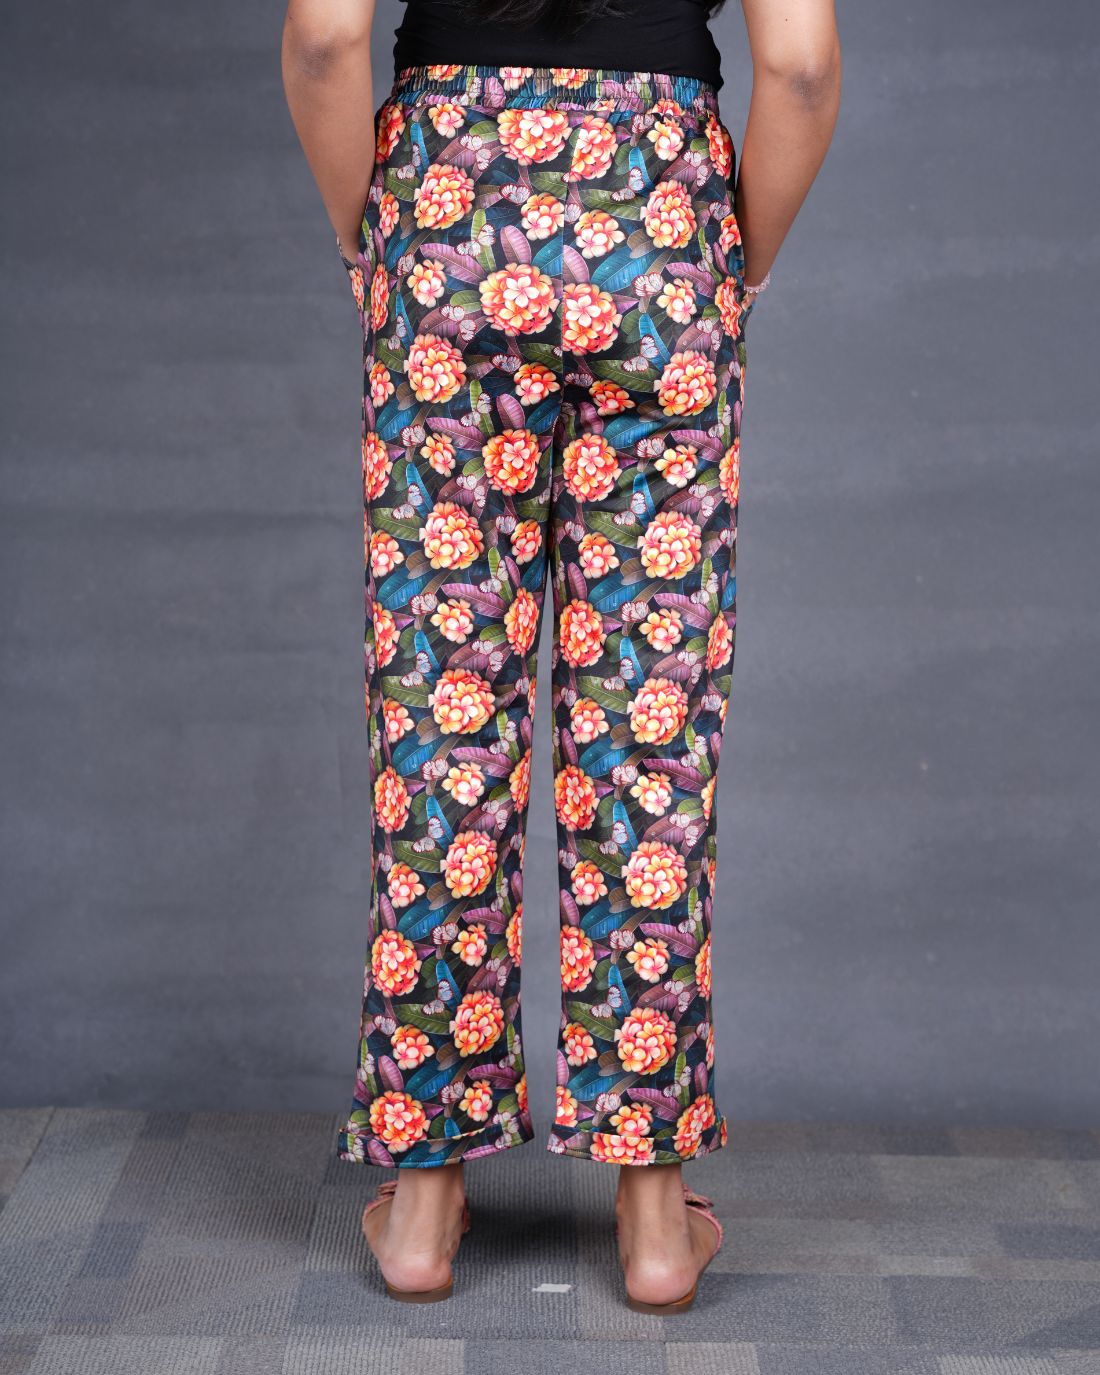 Floral Women Printed Pyjamas (Buy 2 Get 400 OFF)